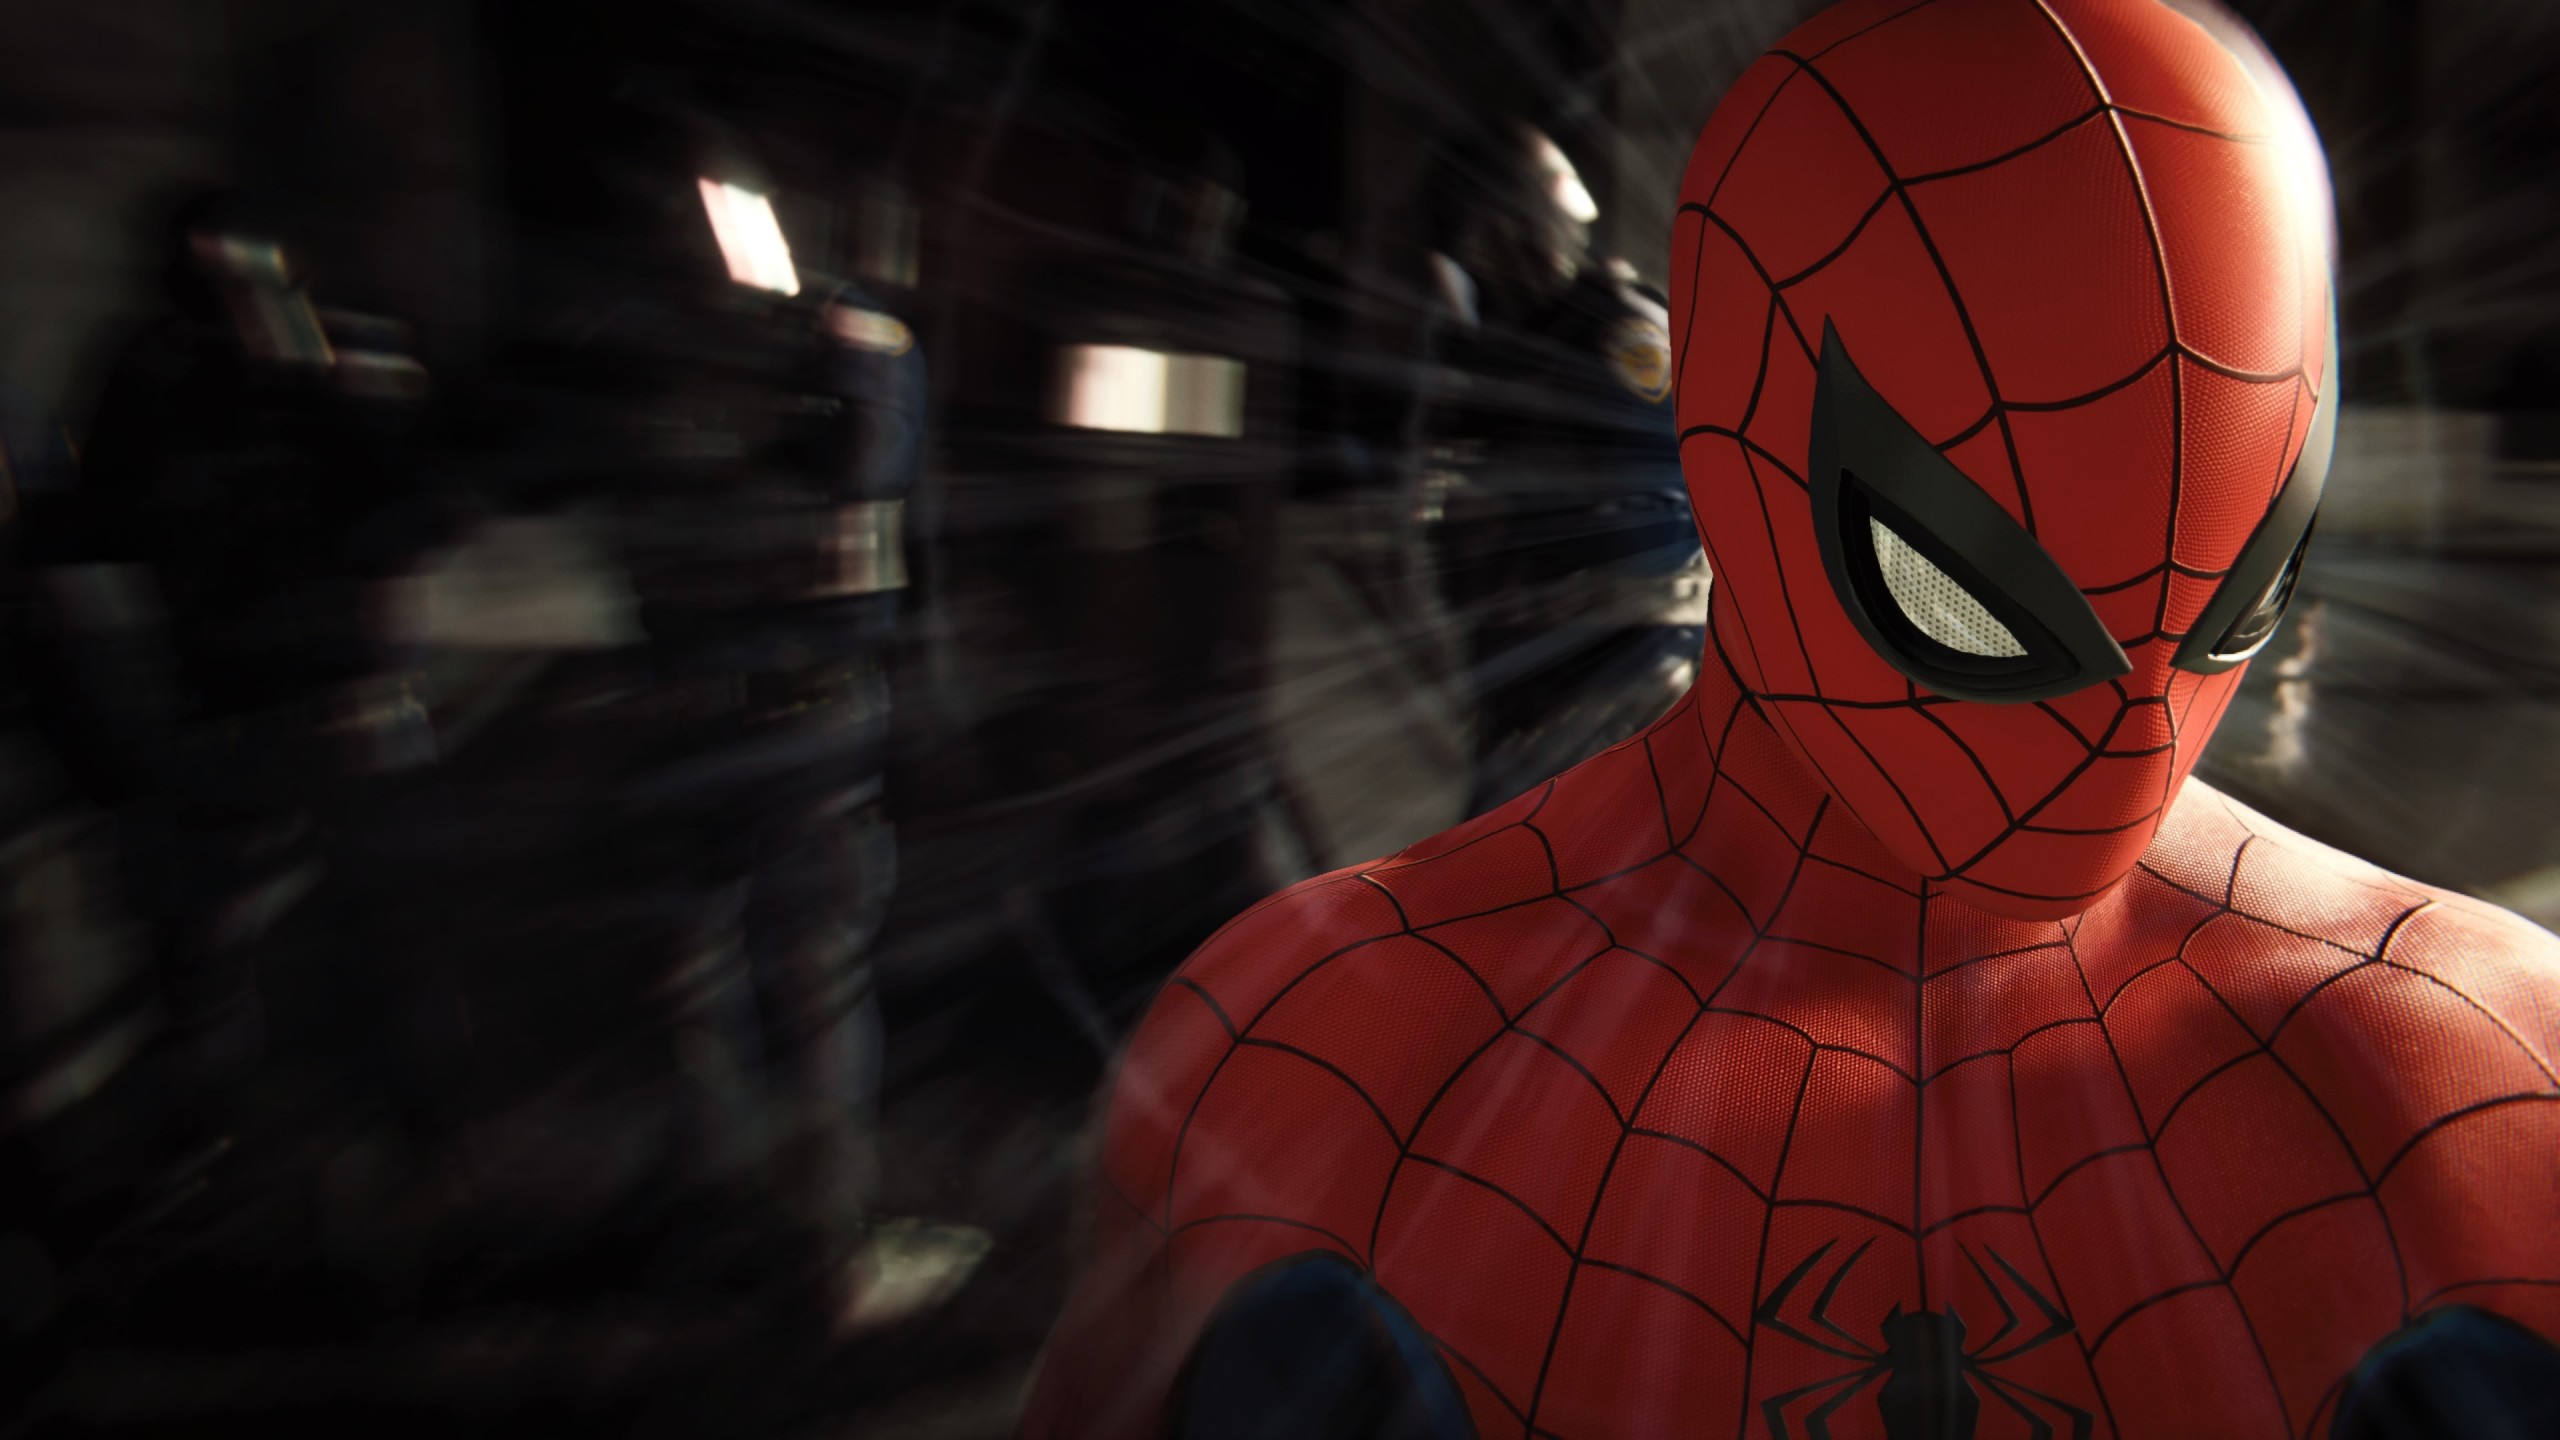 1440 x 2560 4k fond d'écran,homme araignée,super héros,personnage fictif